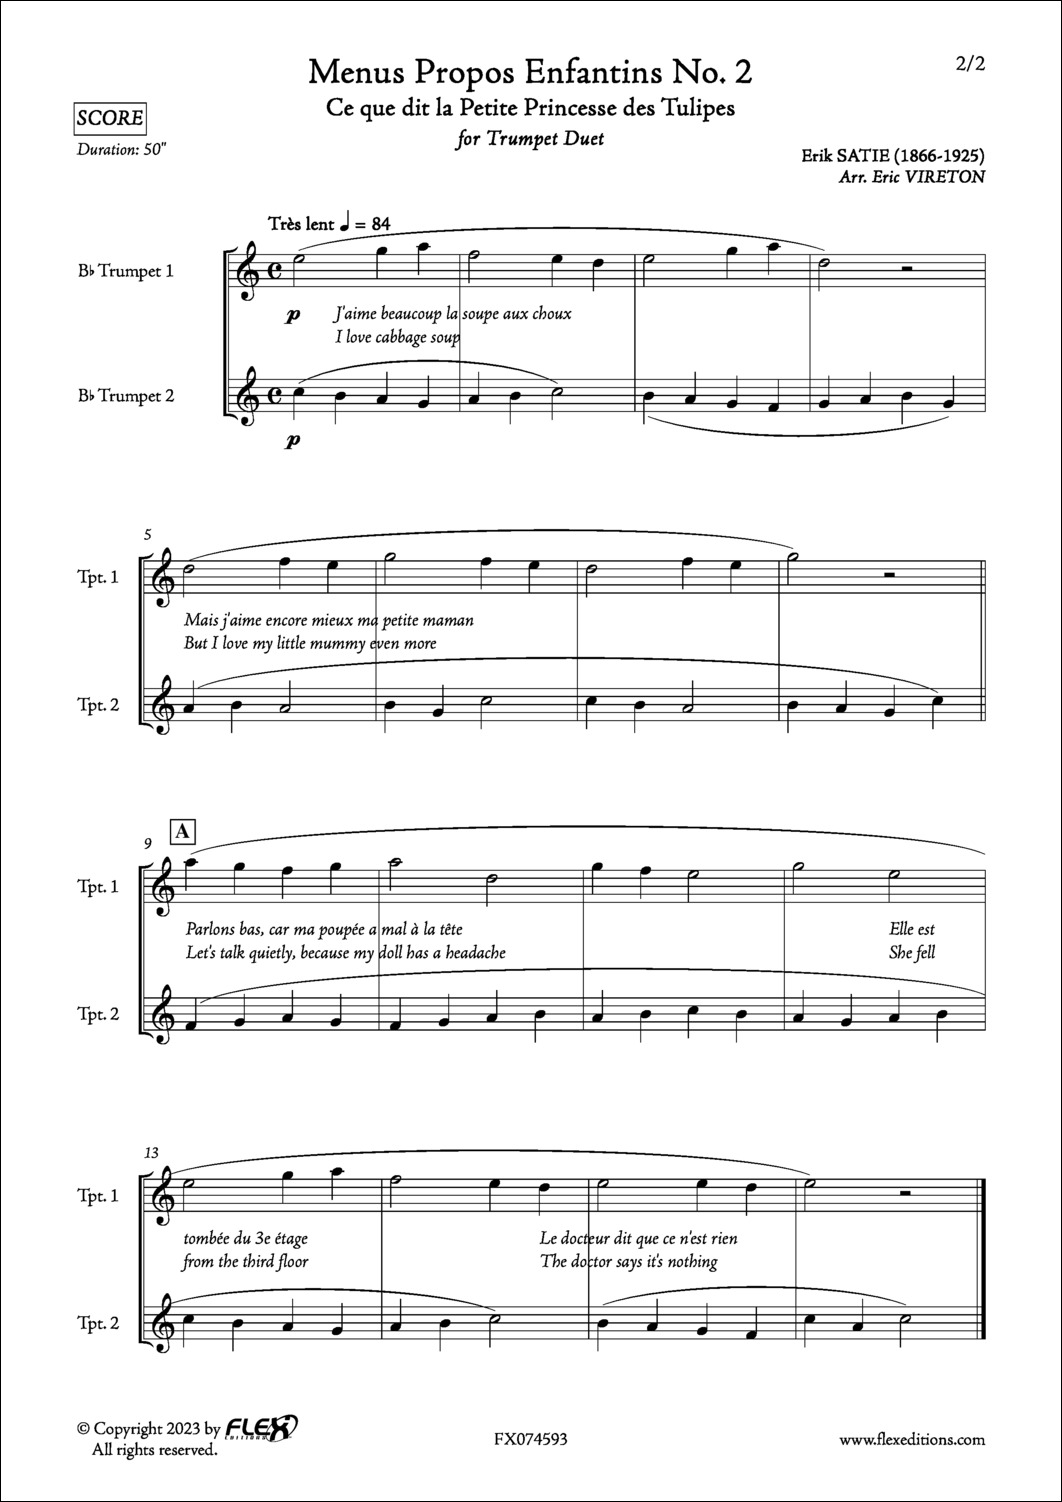 Menus Propos Enfantins No. 2 - E. SATIE - <font color=#666666>Duo de Trompettes</font>